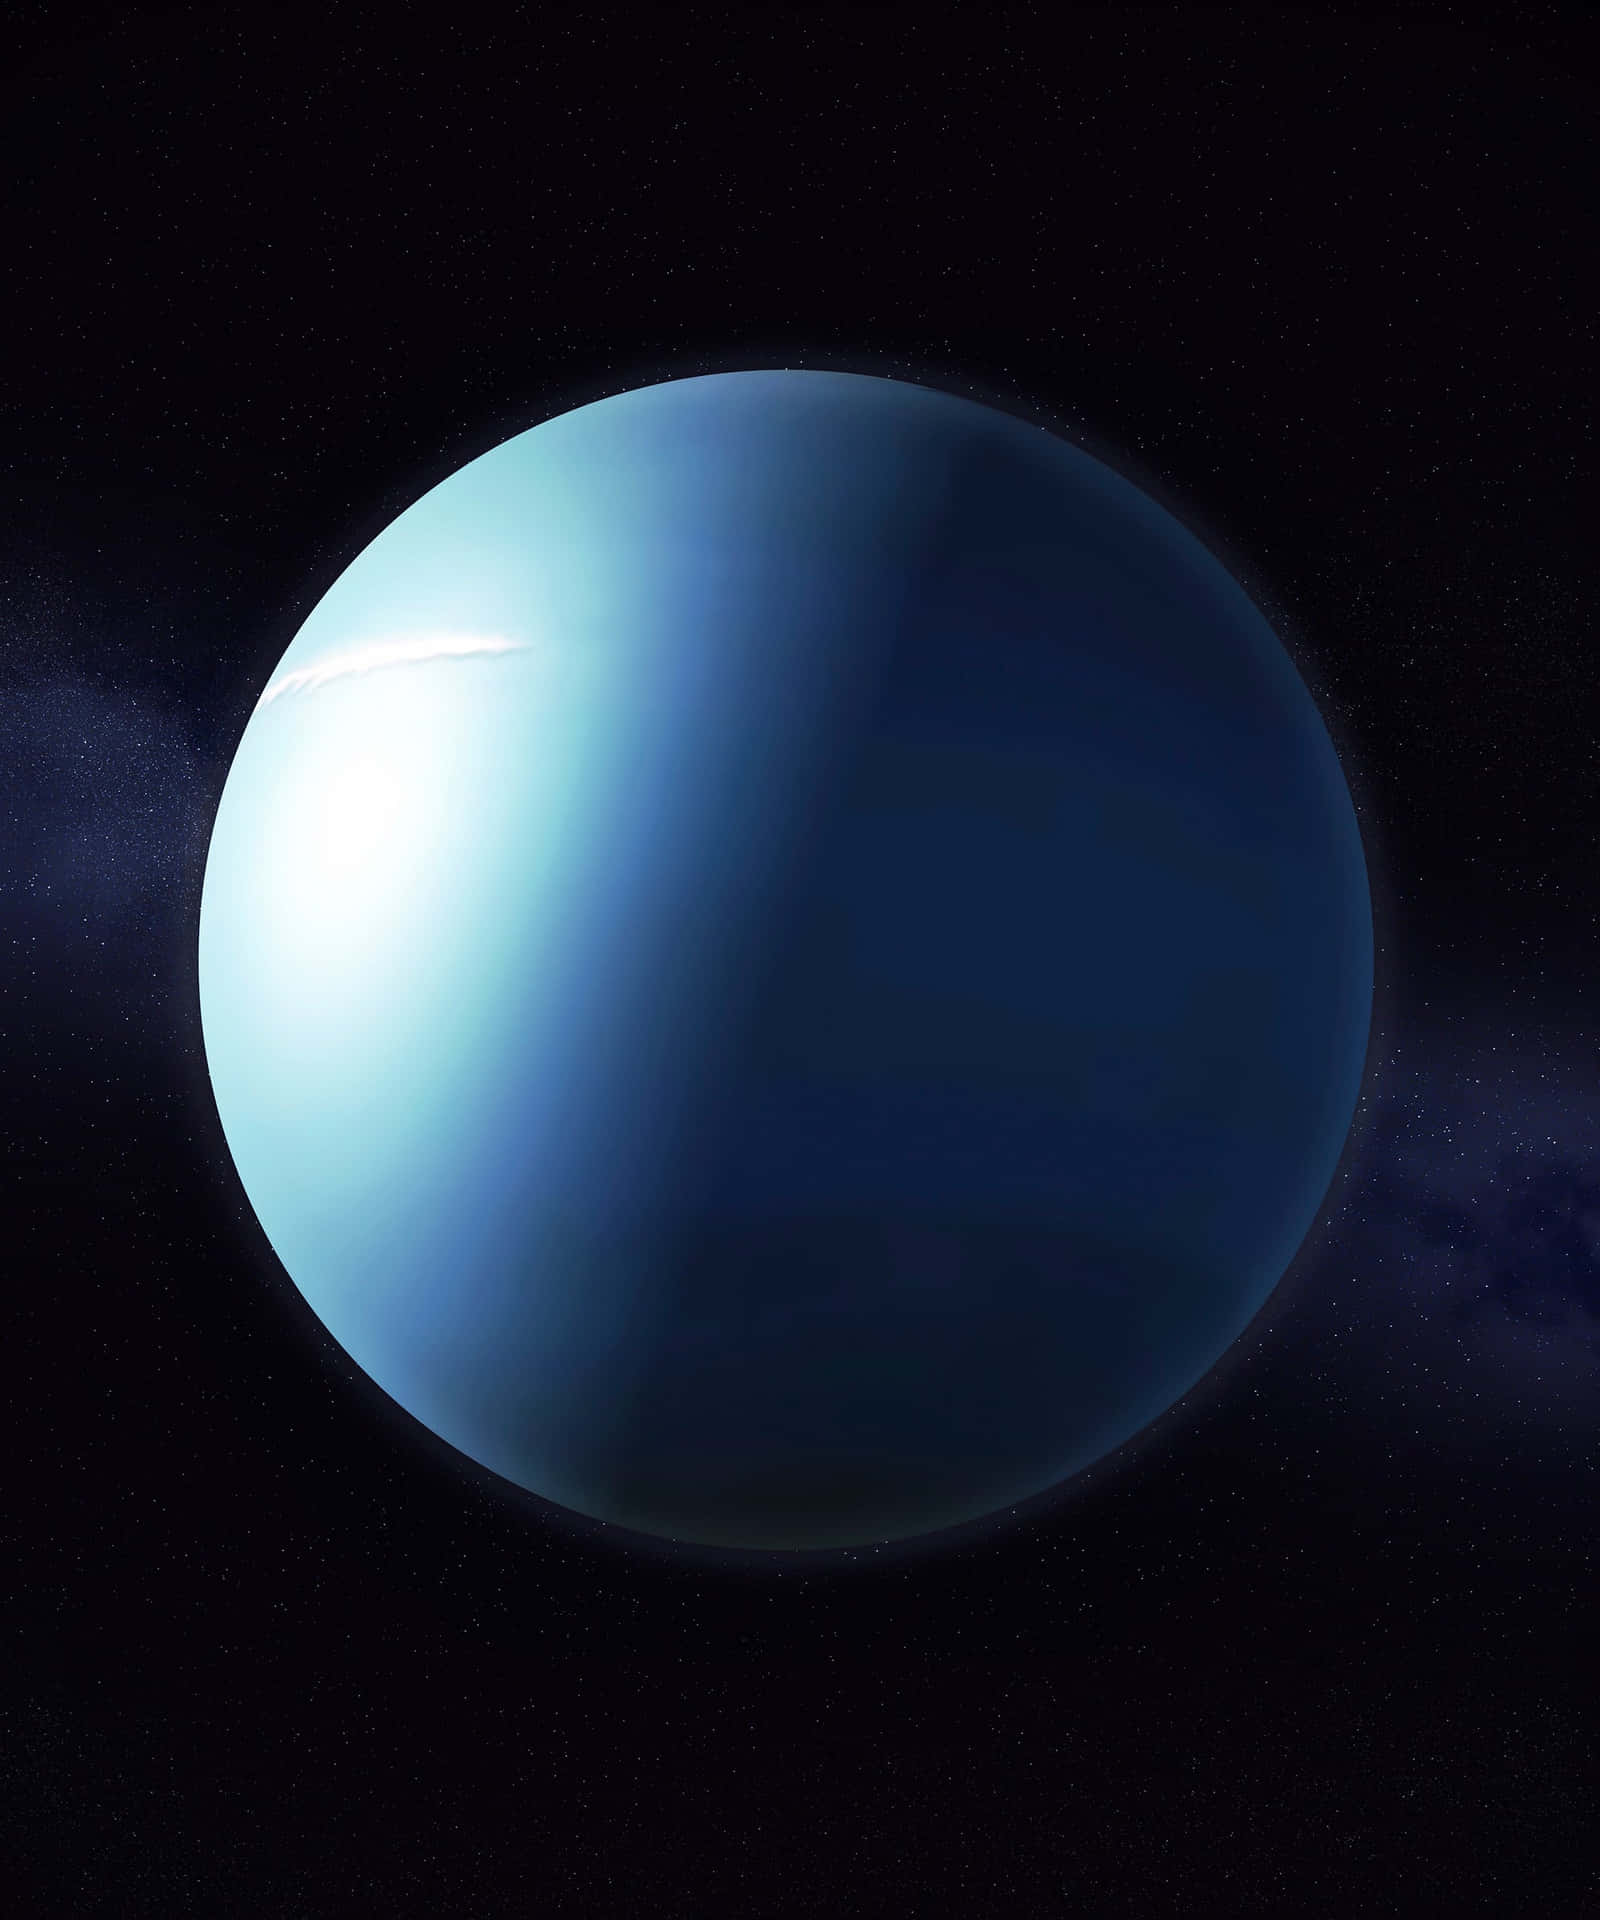 Capturing the majesty of Uranus